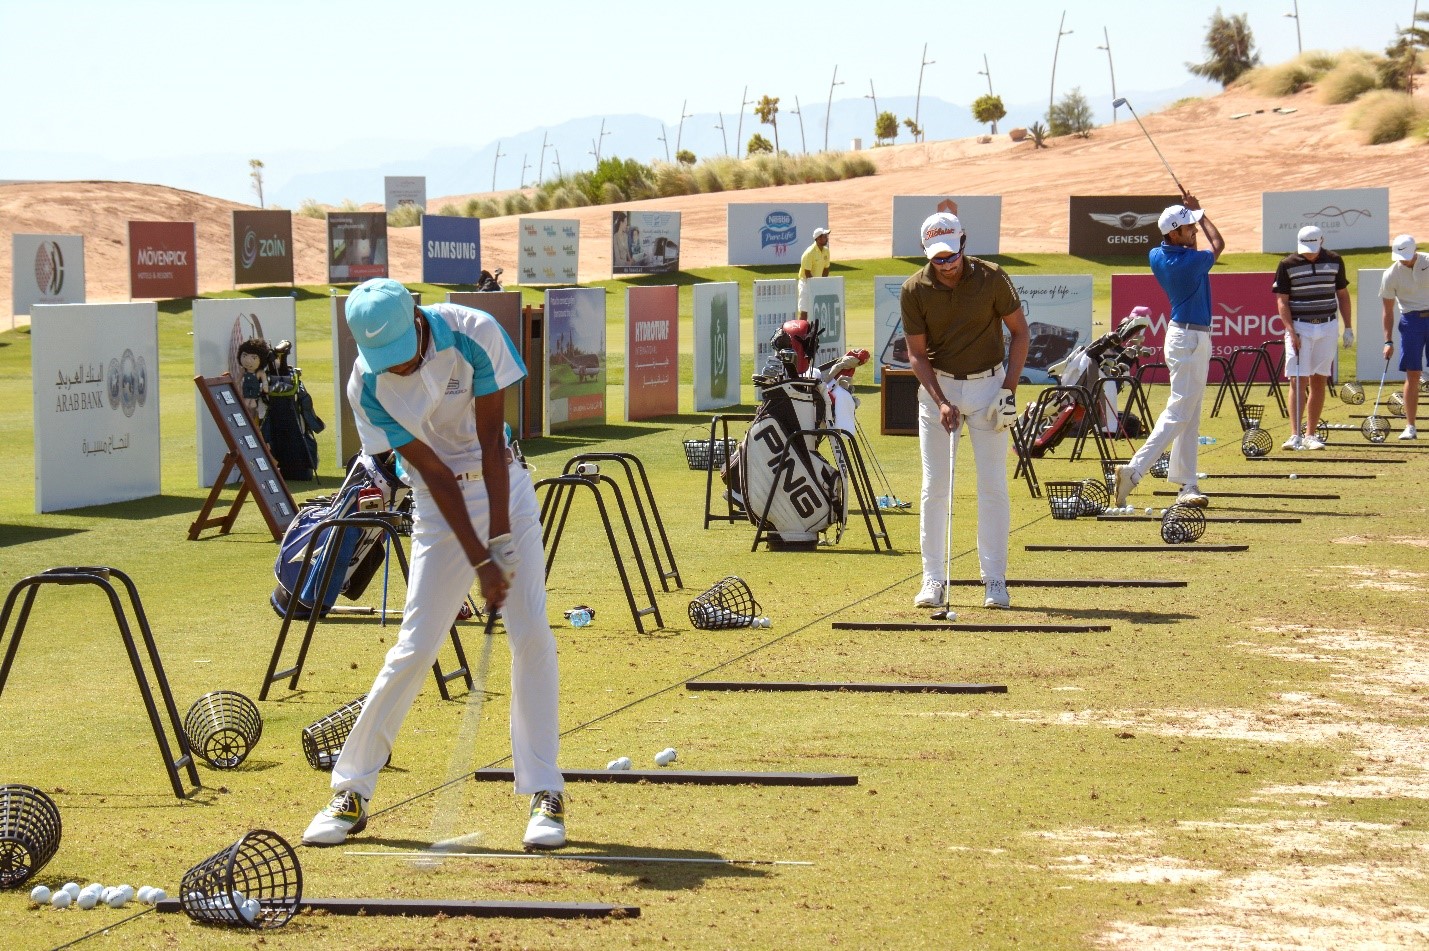 نشاطات لعبة الغولف في ايلا | Golf activities at ayla